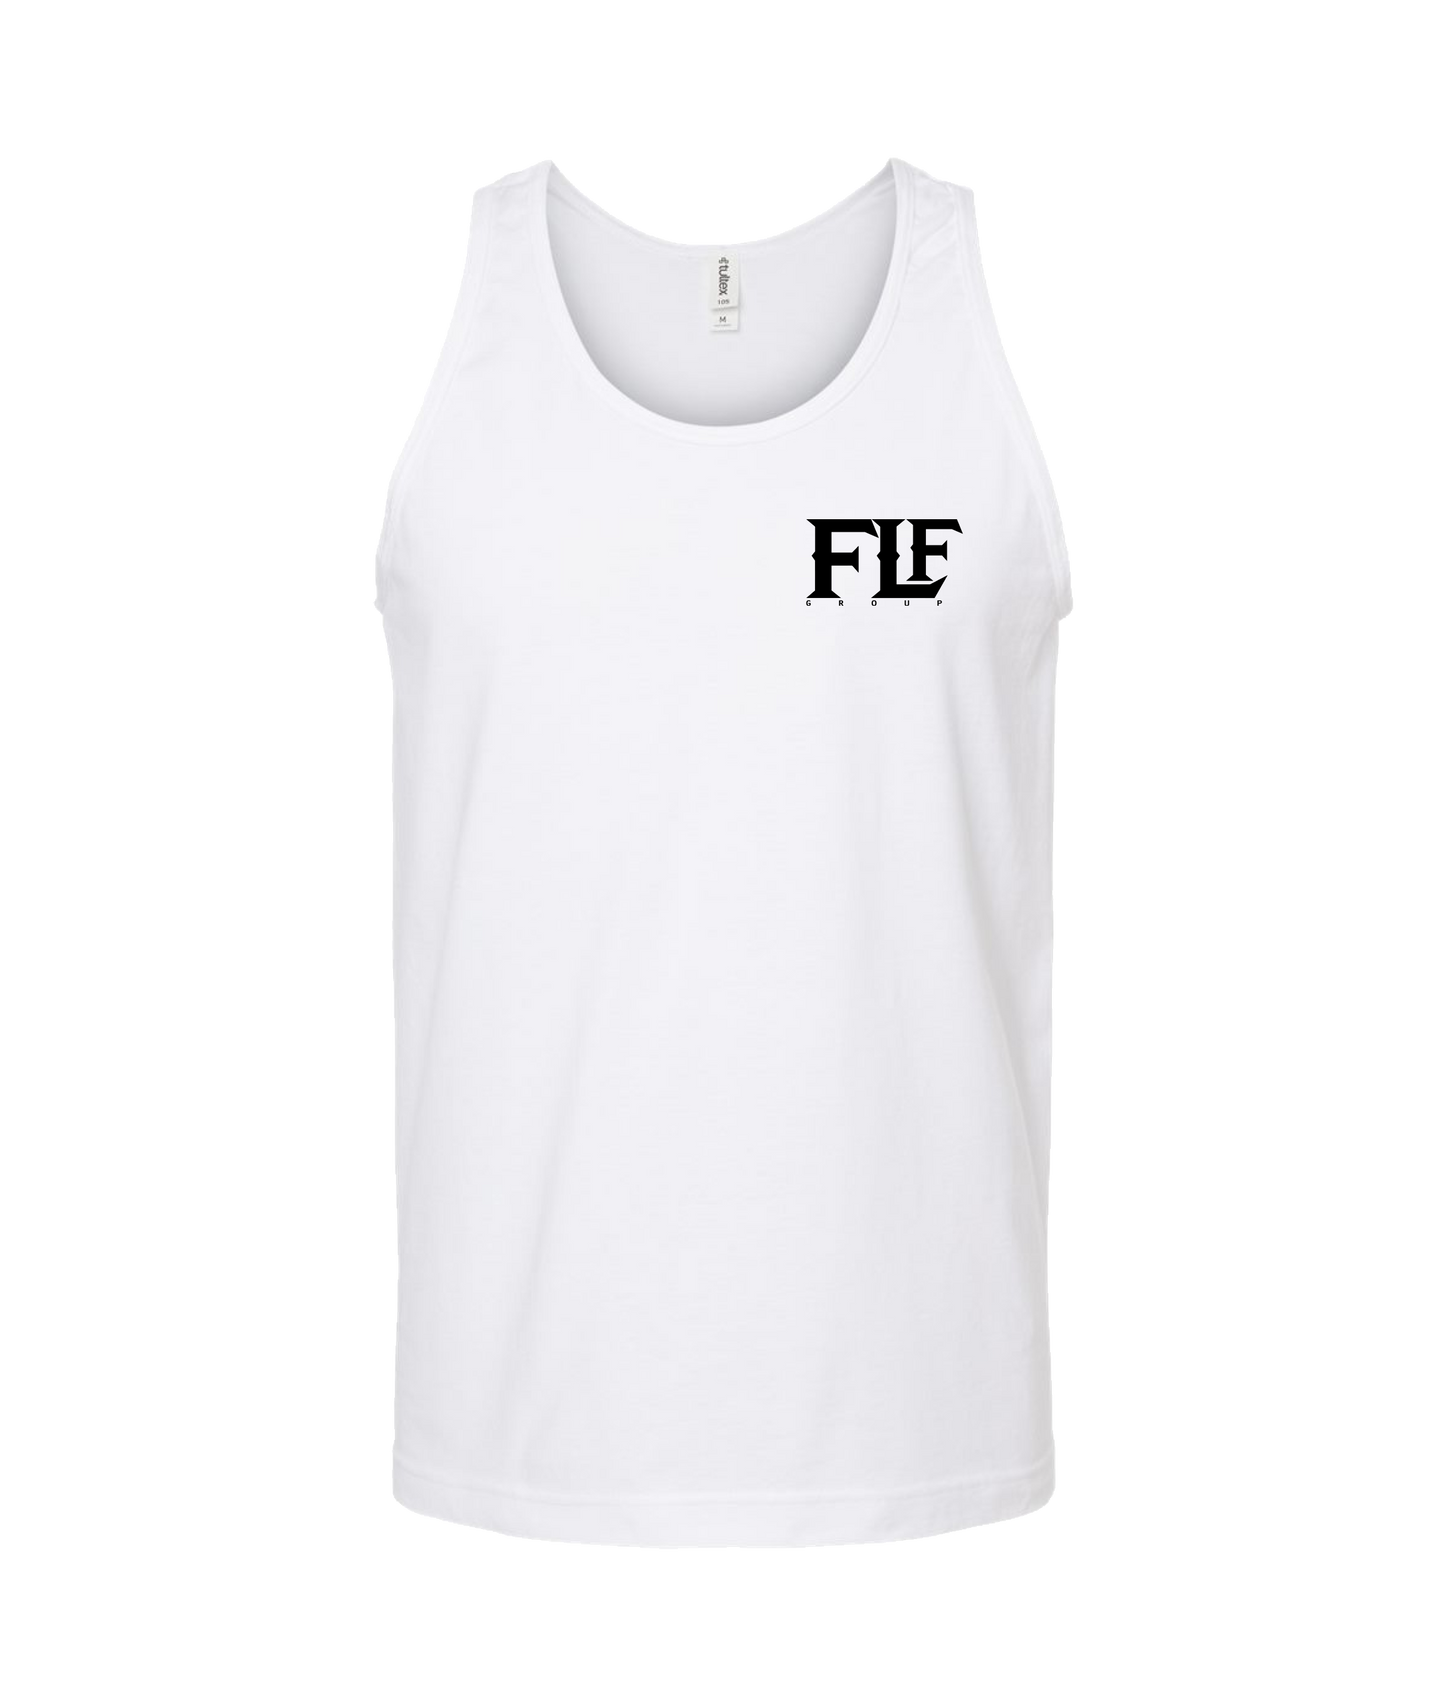 Armani_OD - FLF Group Logo - White Tank Top